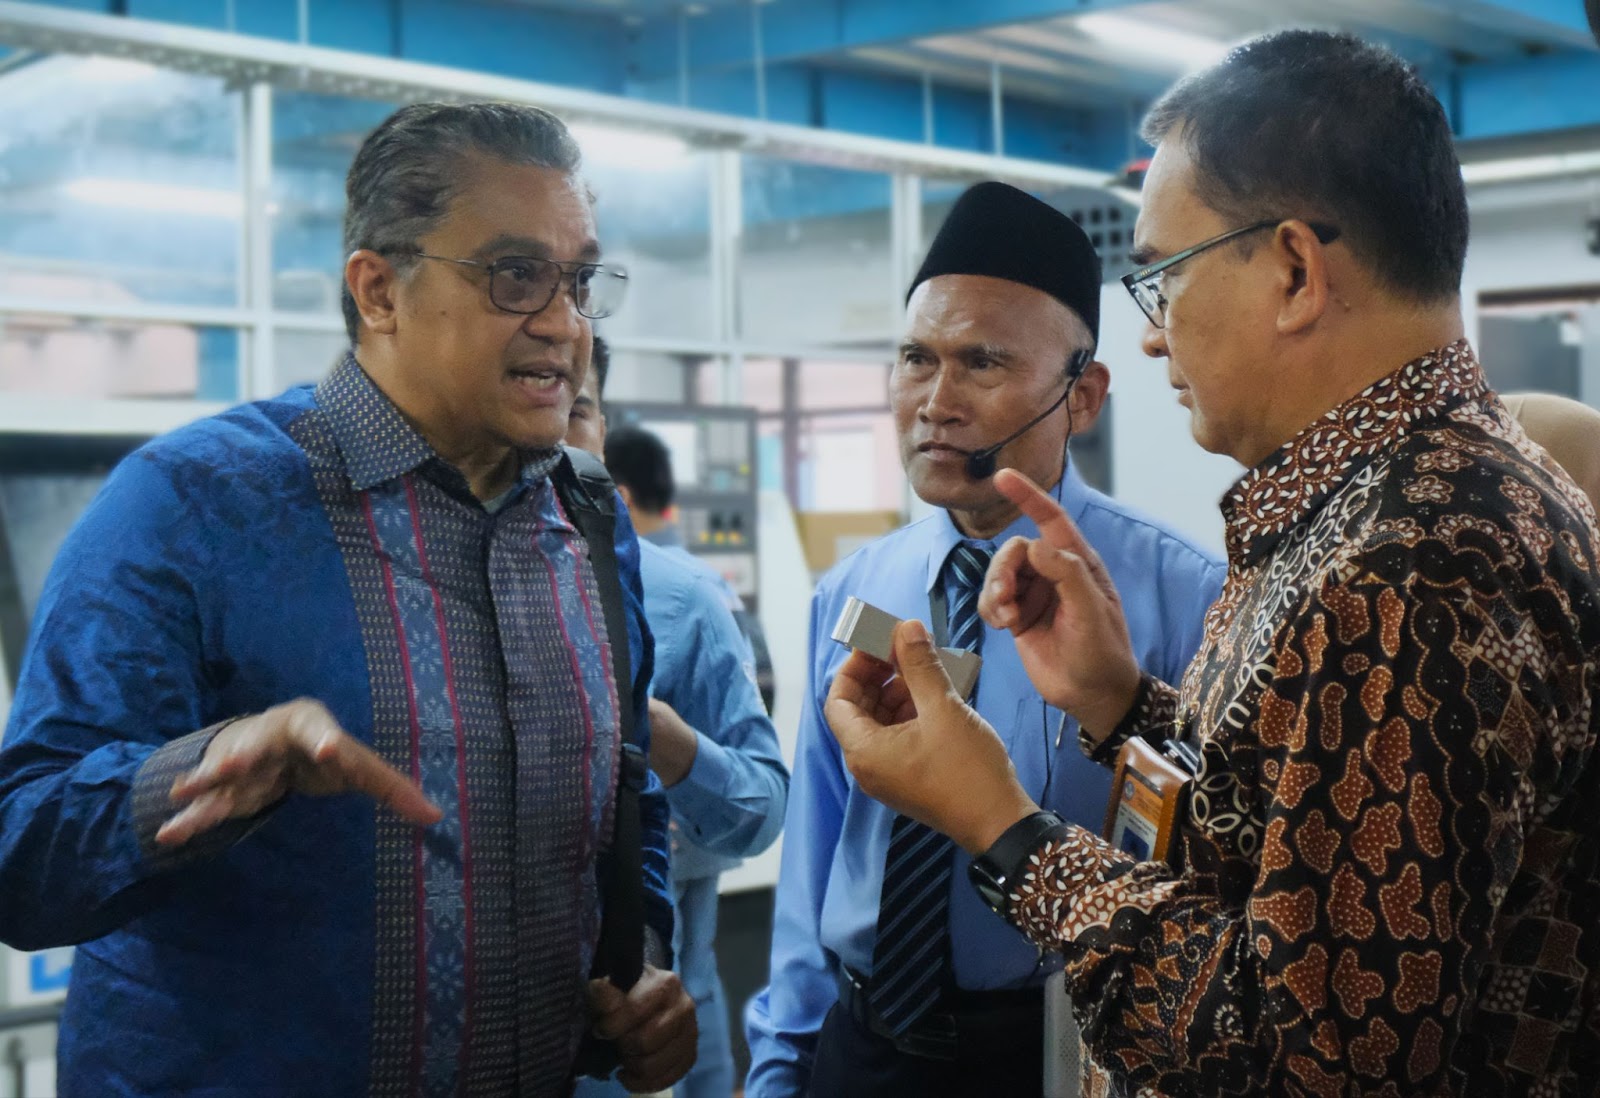 Anggota Komisi X DPR RI Dede Yusuf dan Direktur SMK Wardani Sugiyanto melihat benda kerja siswa didampingi Bapak Sumarno